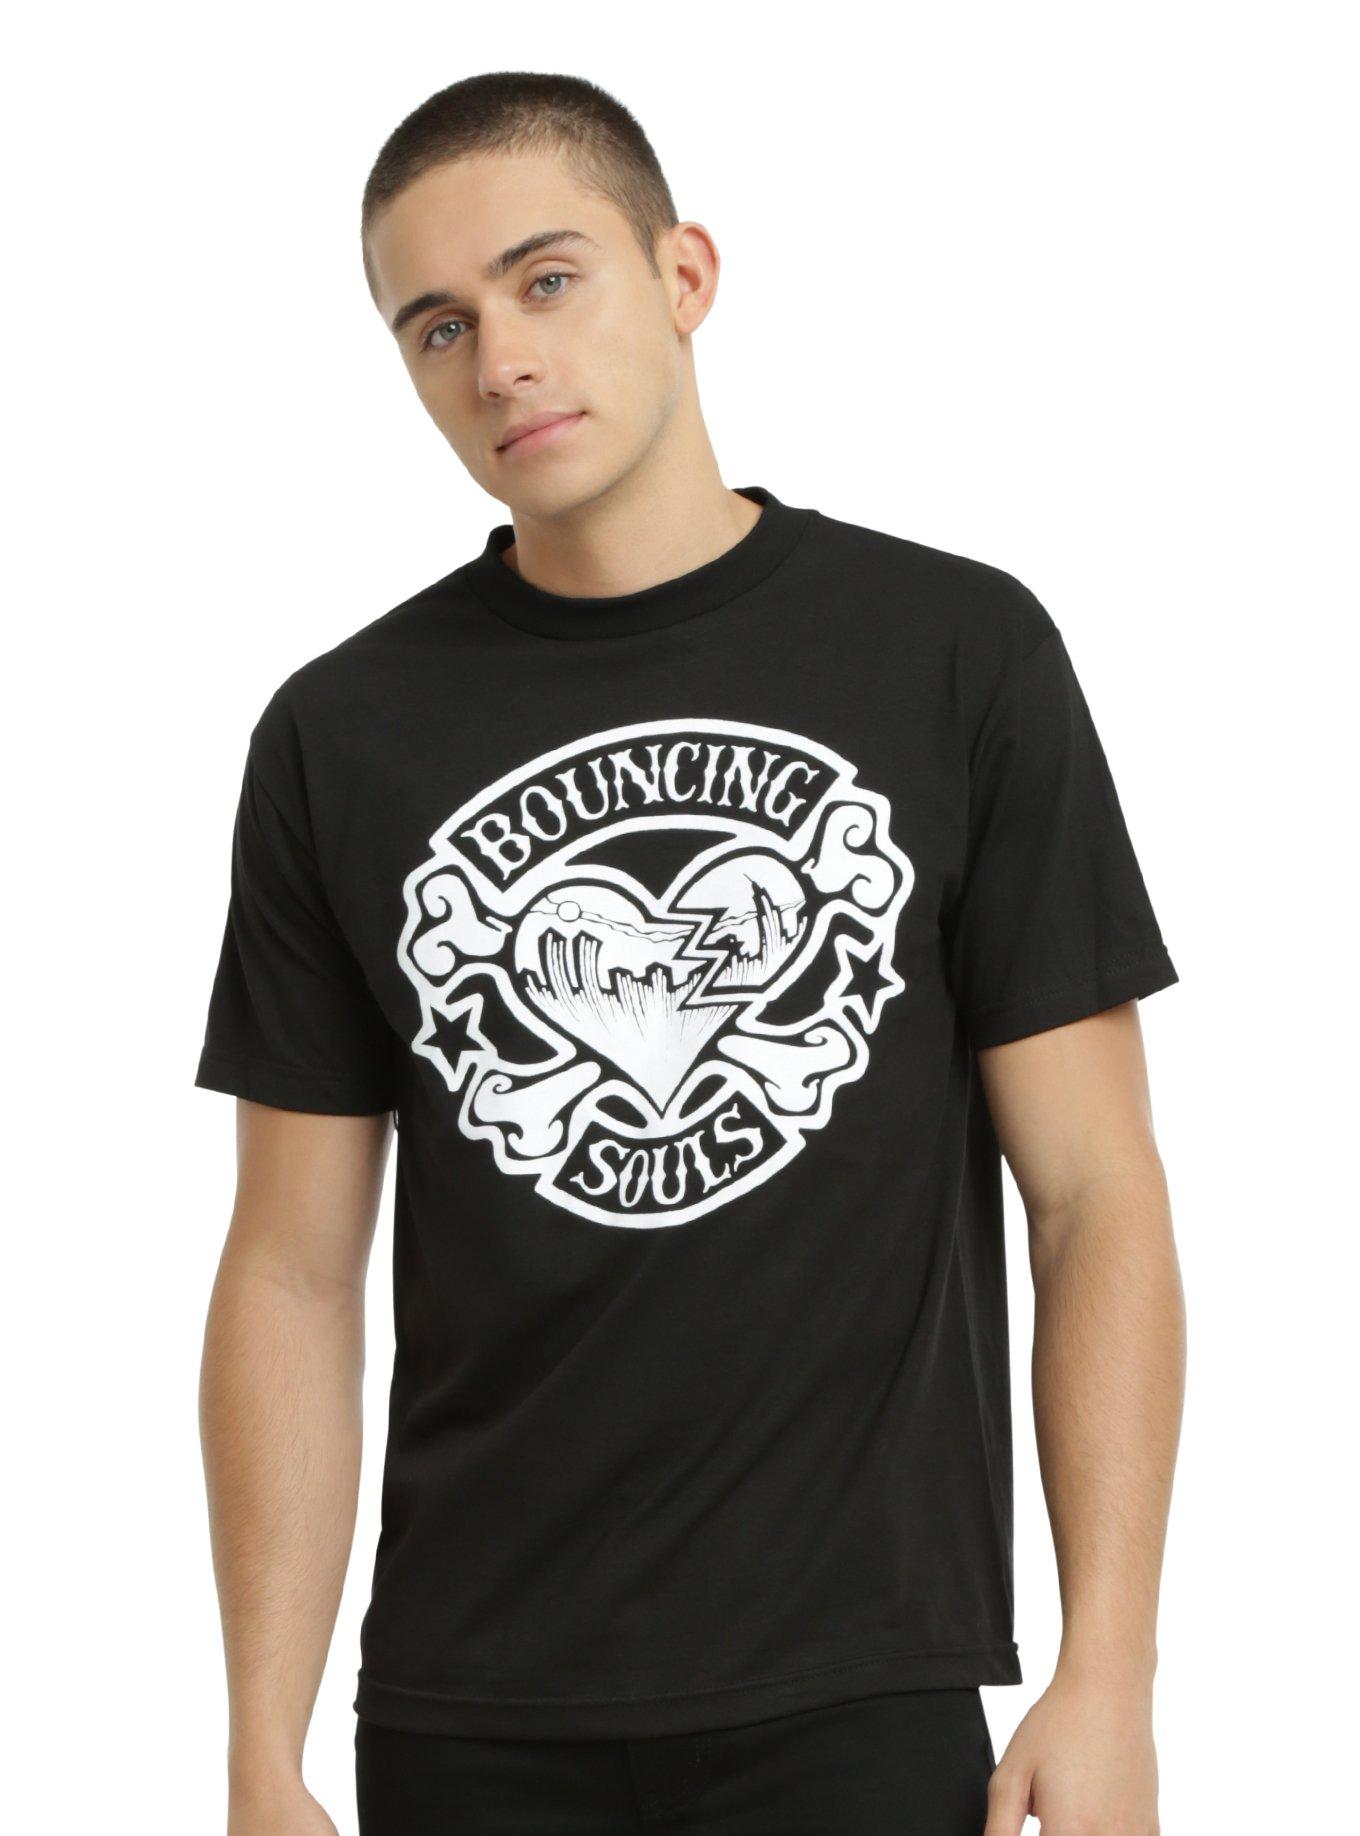 Bouncing Souls Rocker Heart T-Shirt, BLACK, hi-res